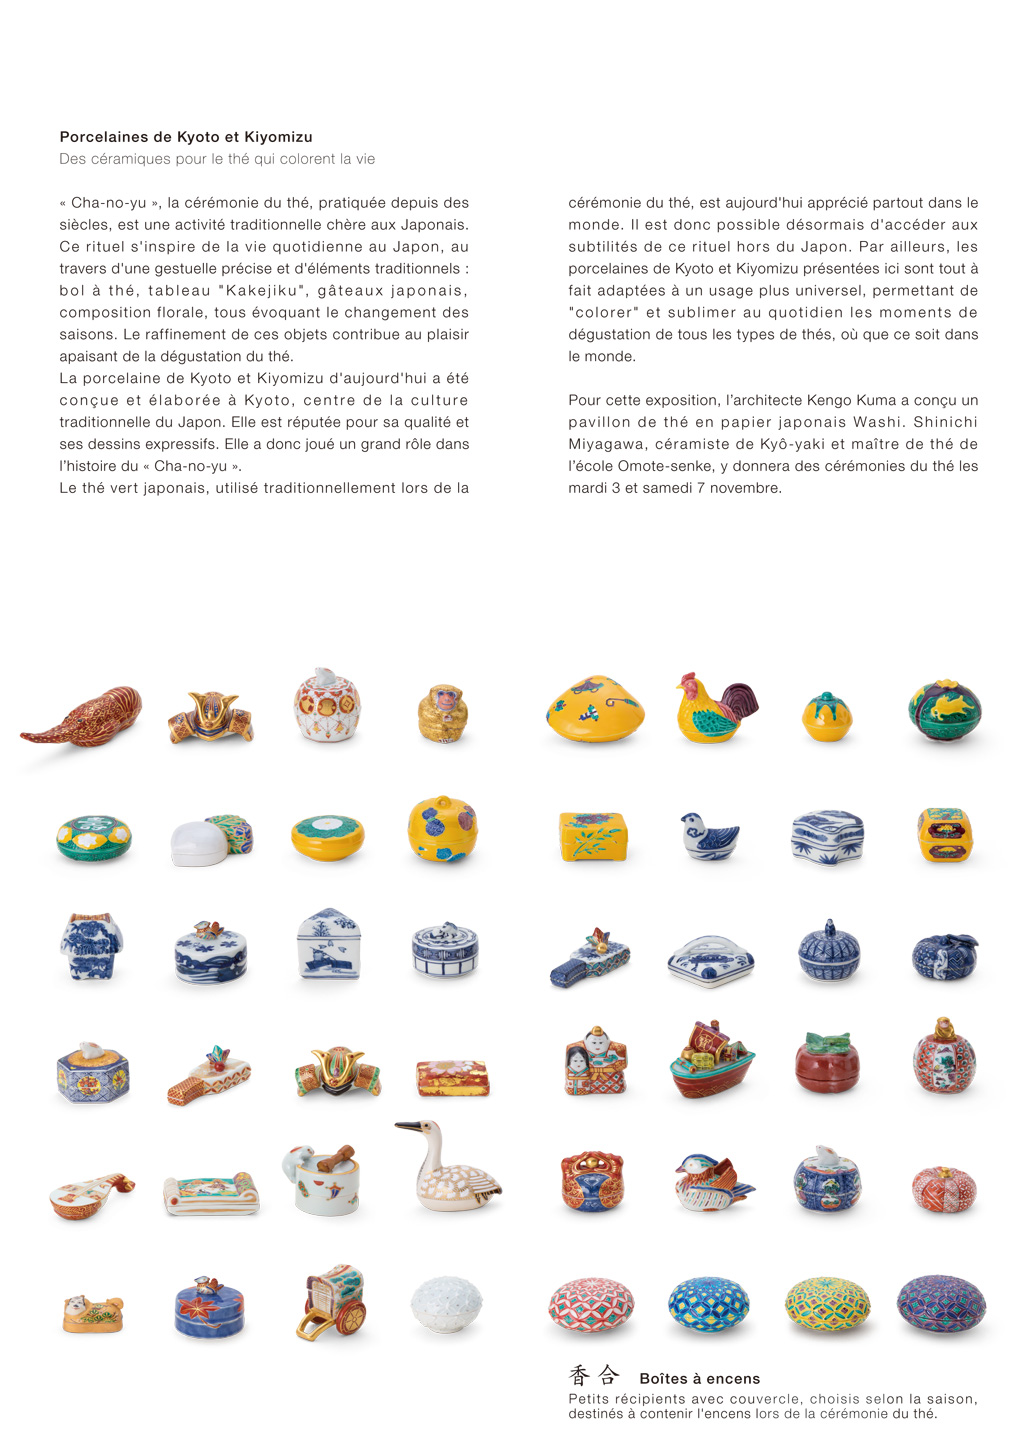 Porcelaines de Kyoto et Kiyomizu / Des céramiques pour le thé qui colorent la vie